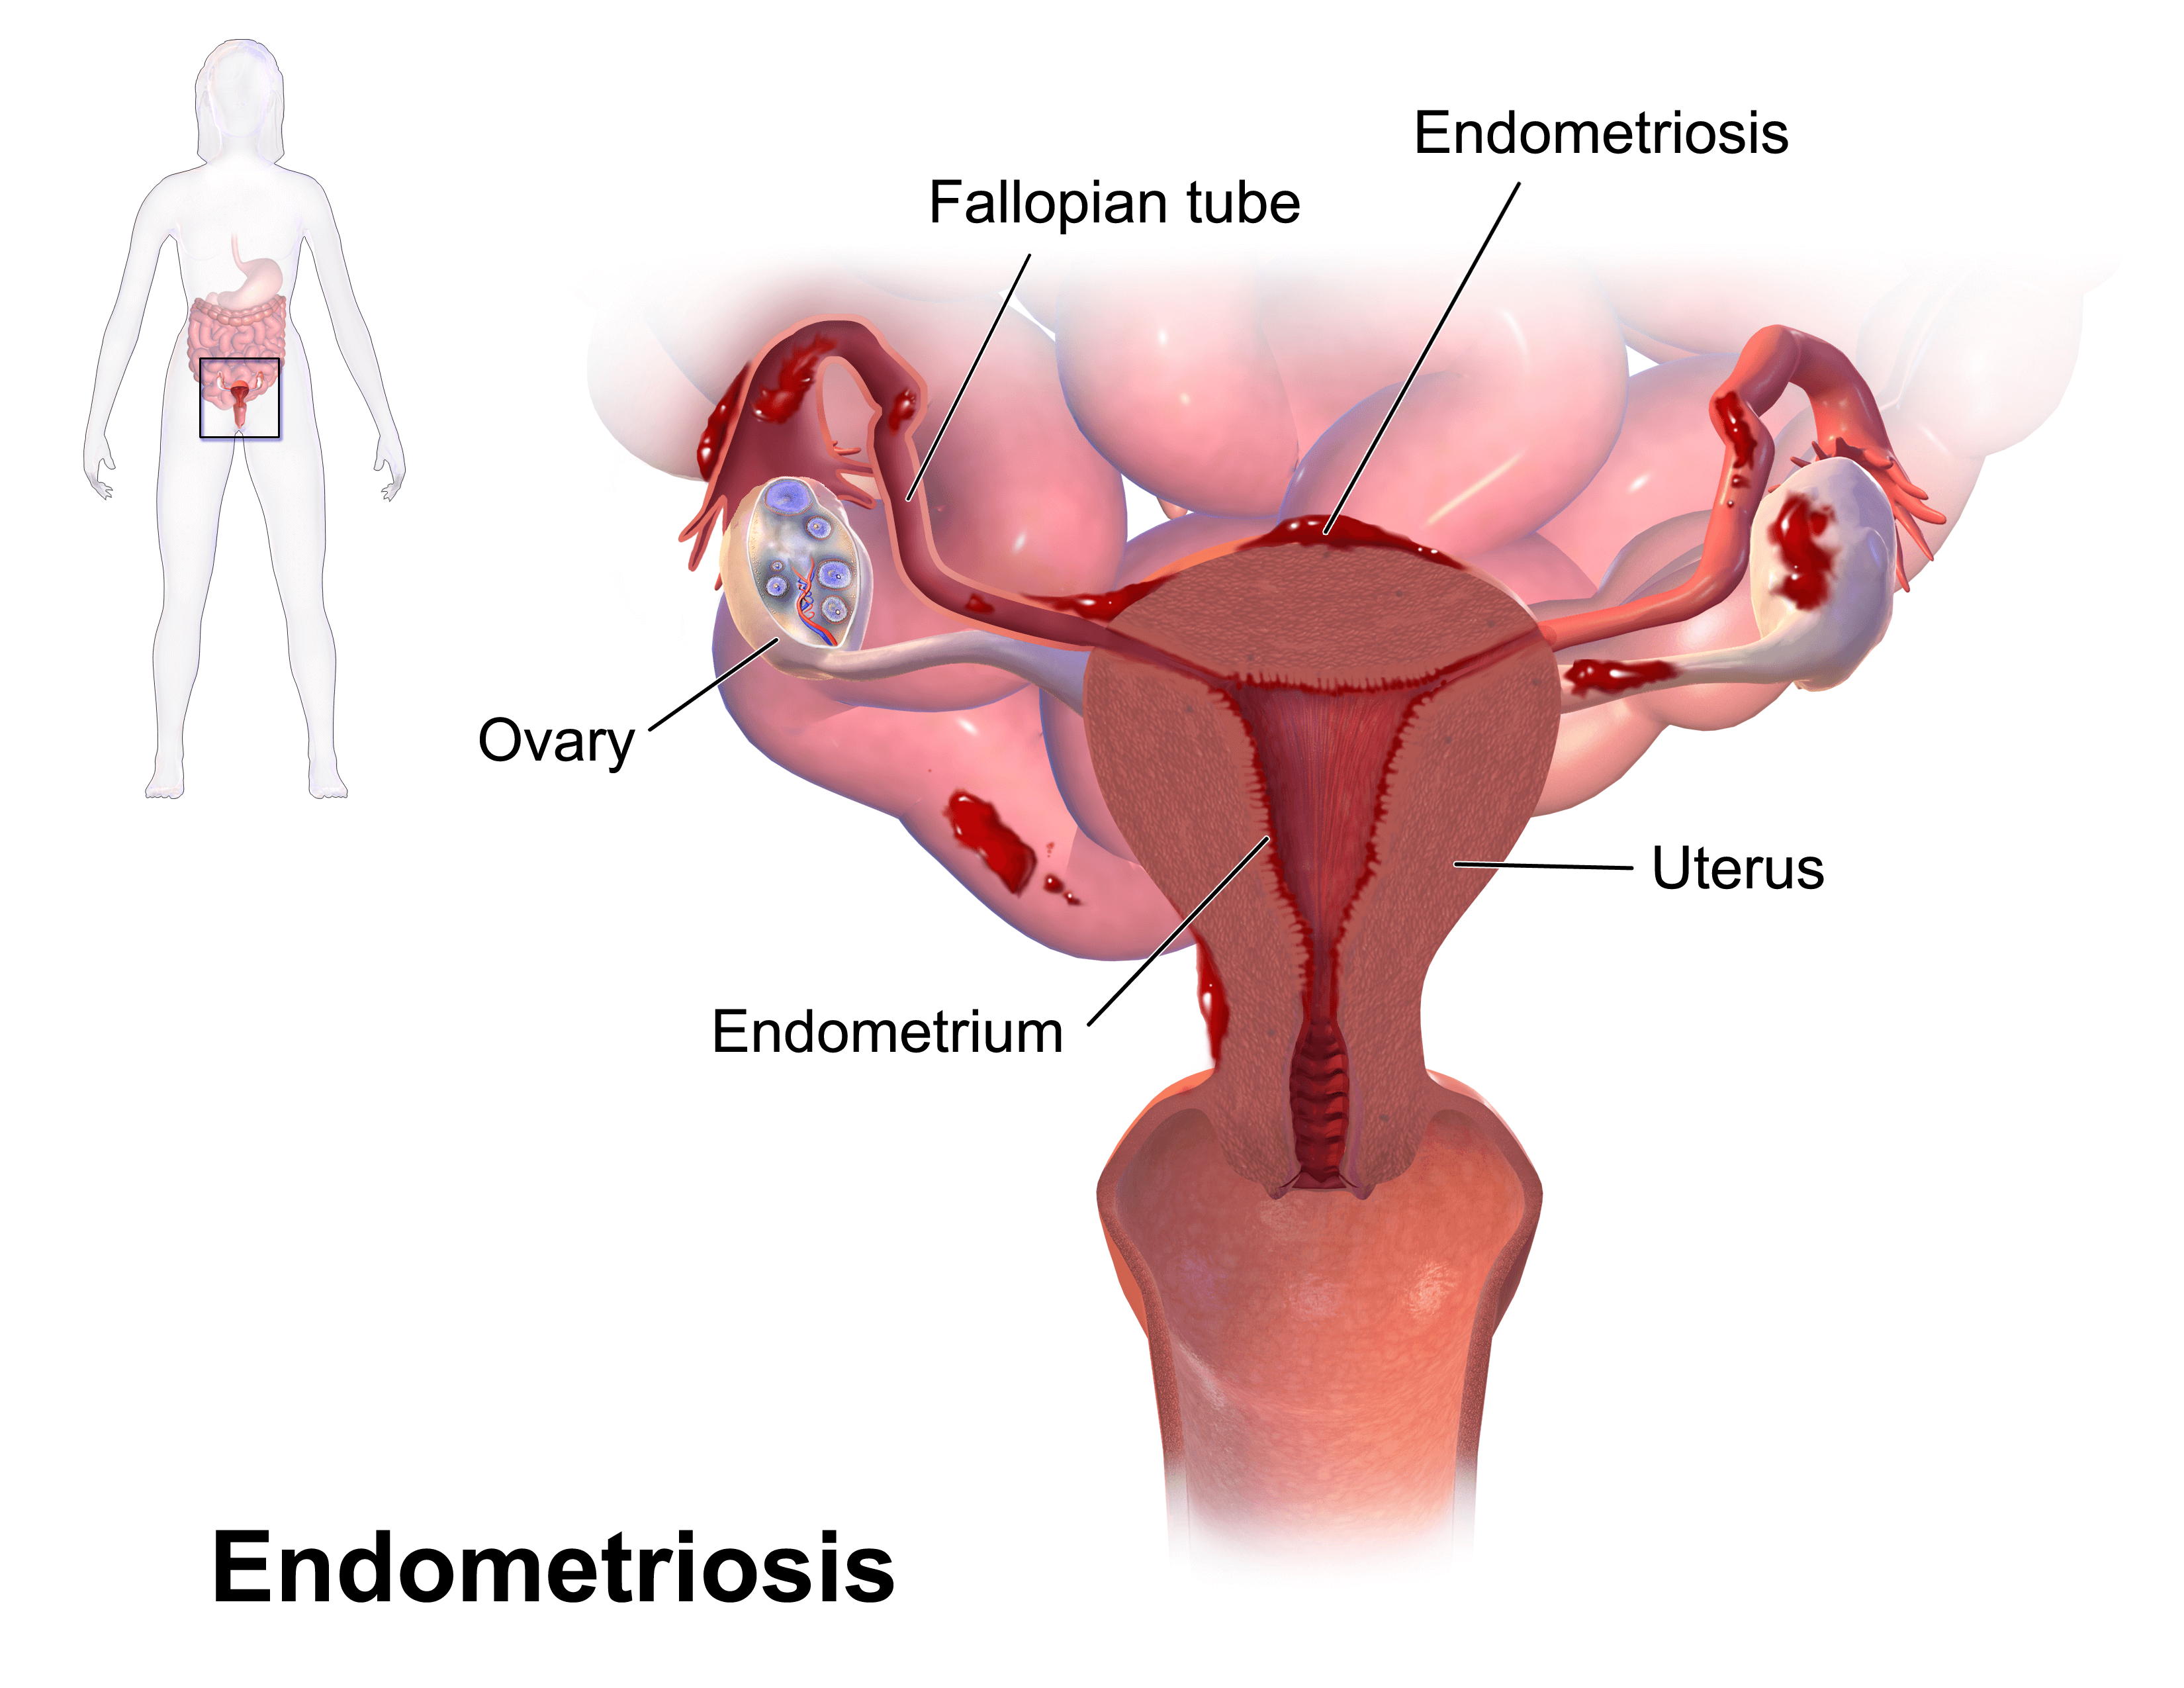 consult Endocrinologist for Endometriosis